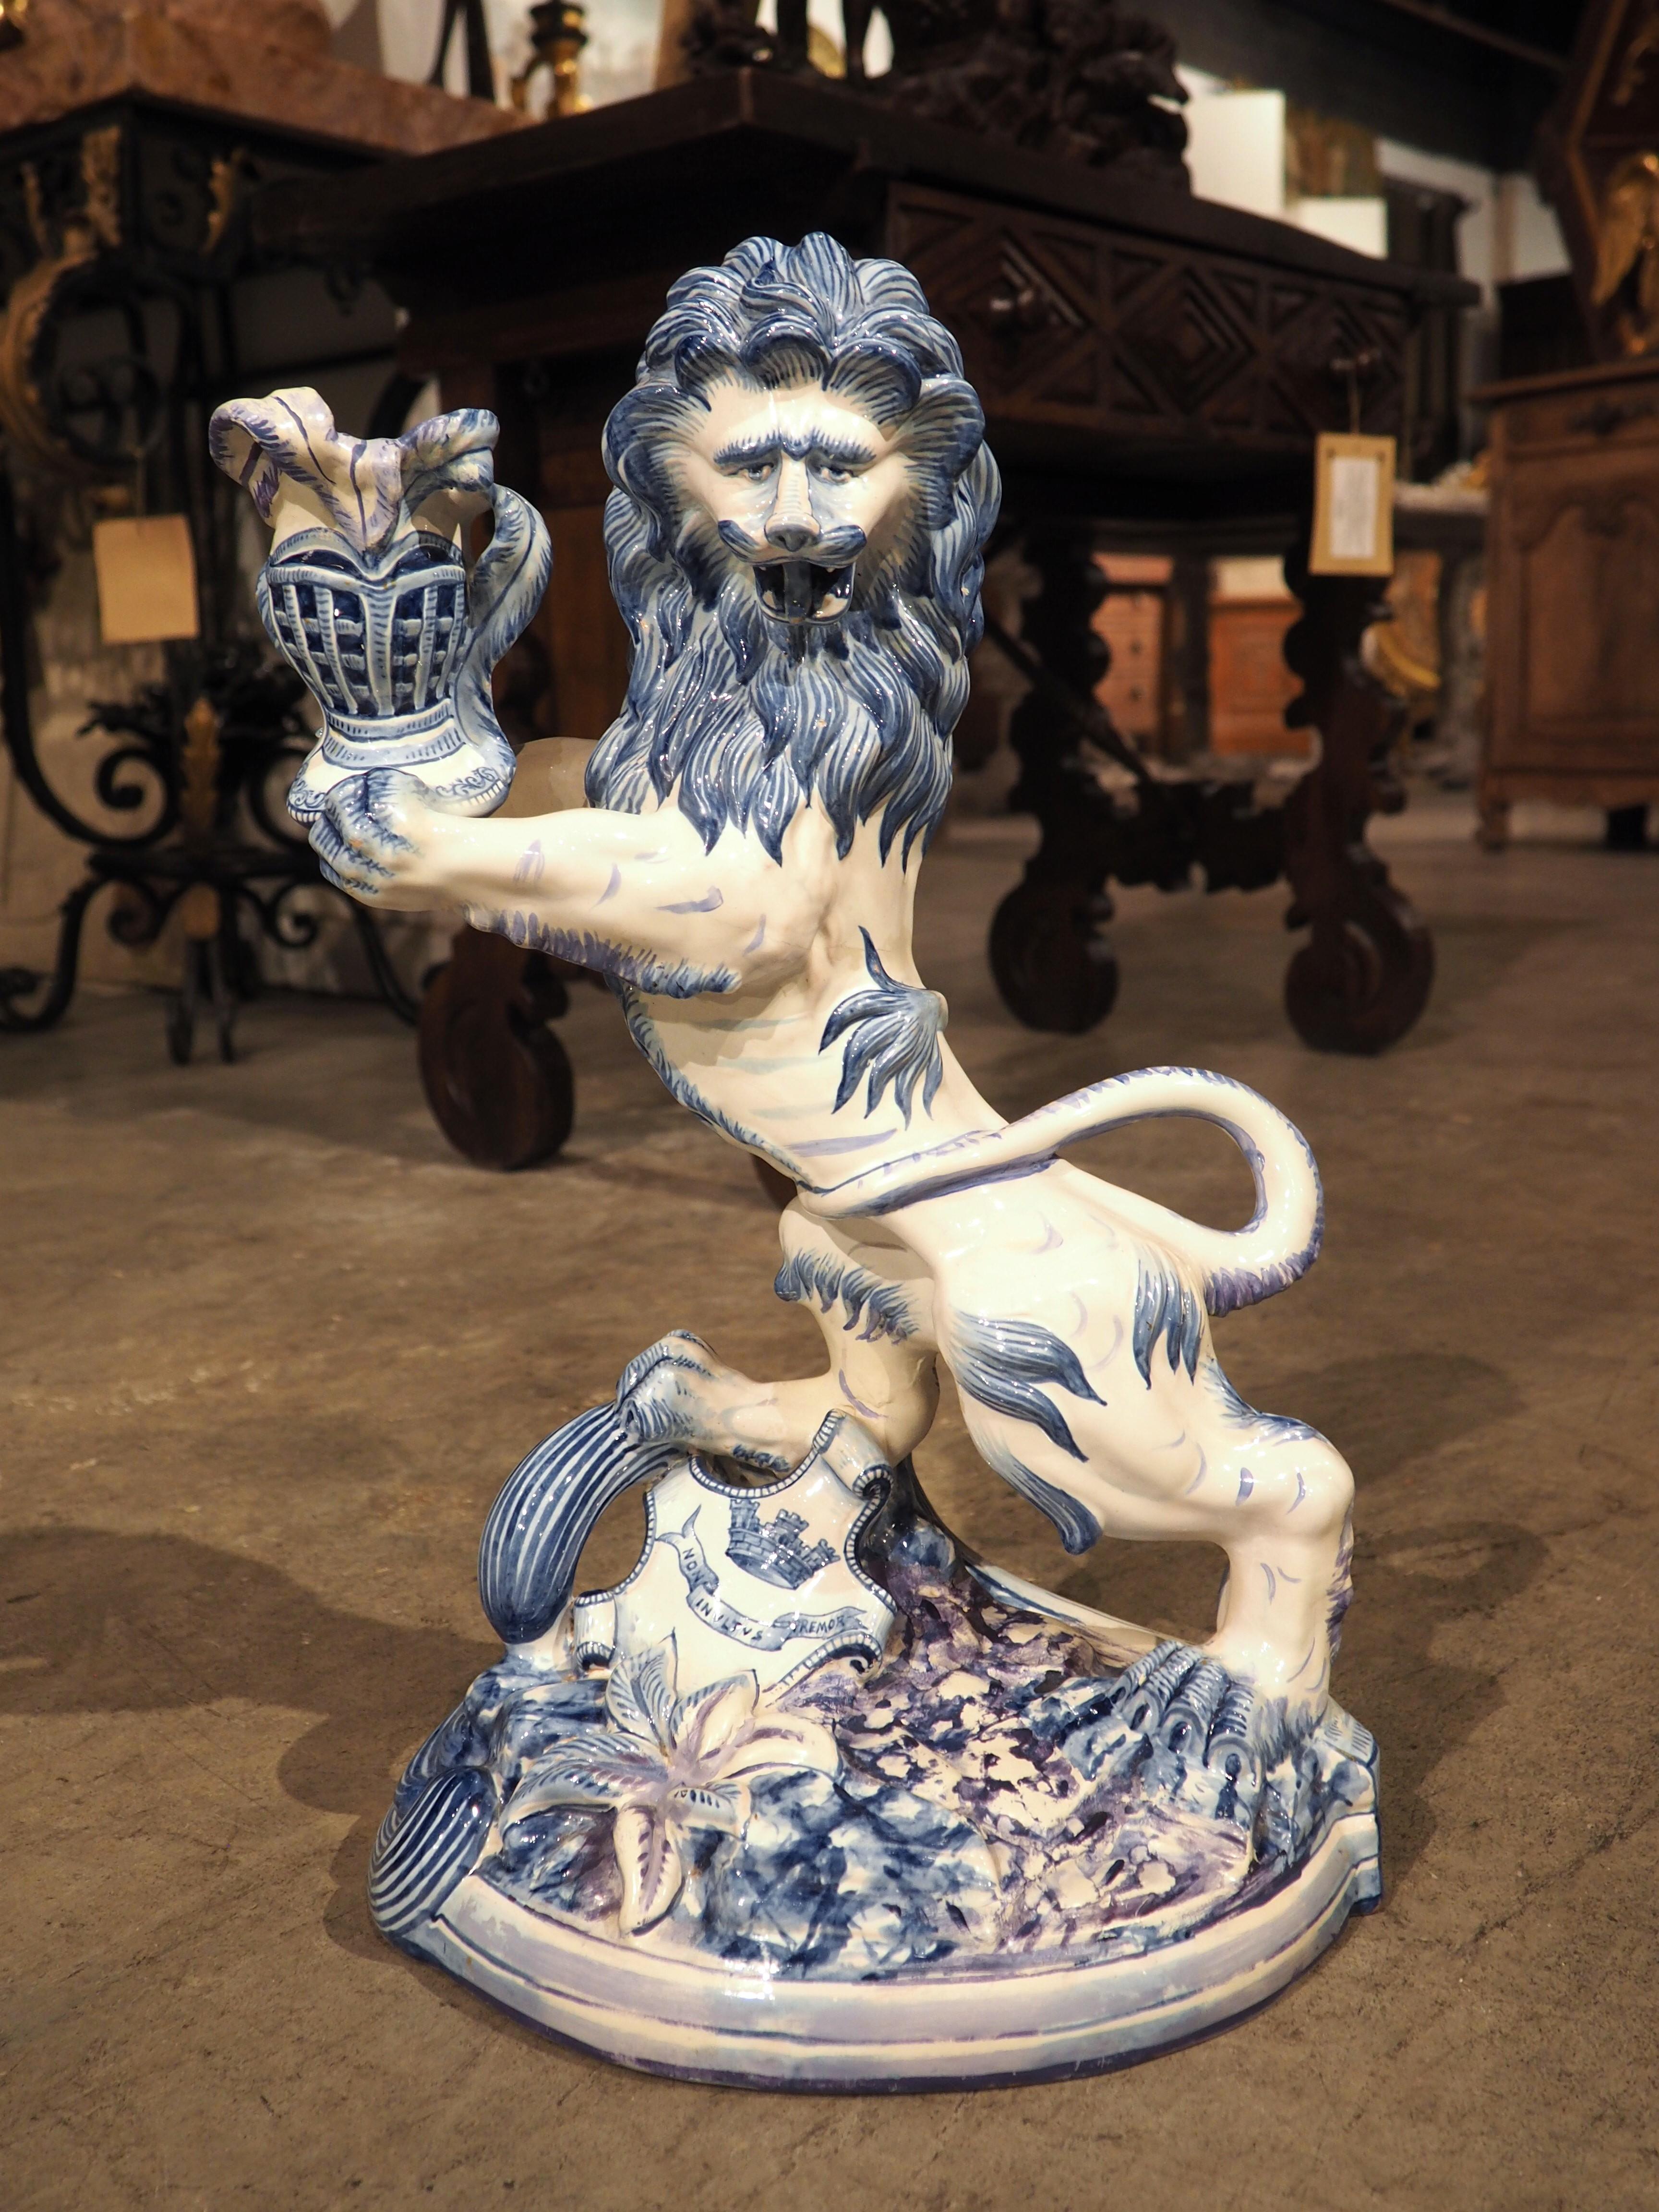 Ce bougeoir en faïence en forme de lion, peint à la main en bleu cobalt et blanc, date d'environ 1890. D'après les marques de production figurant au dos de la base, le bougeoir a été fabriqué à Saint-Clément, par Keller & Guerin, qui était à